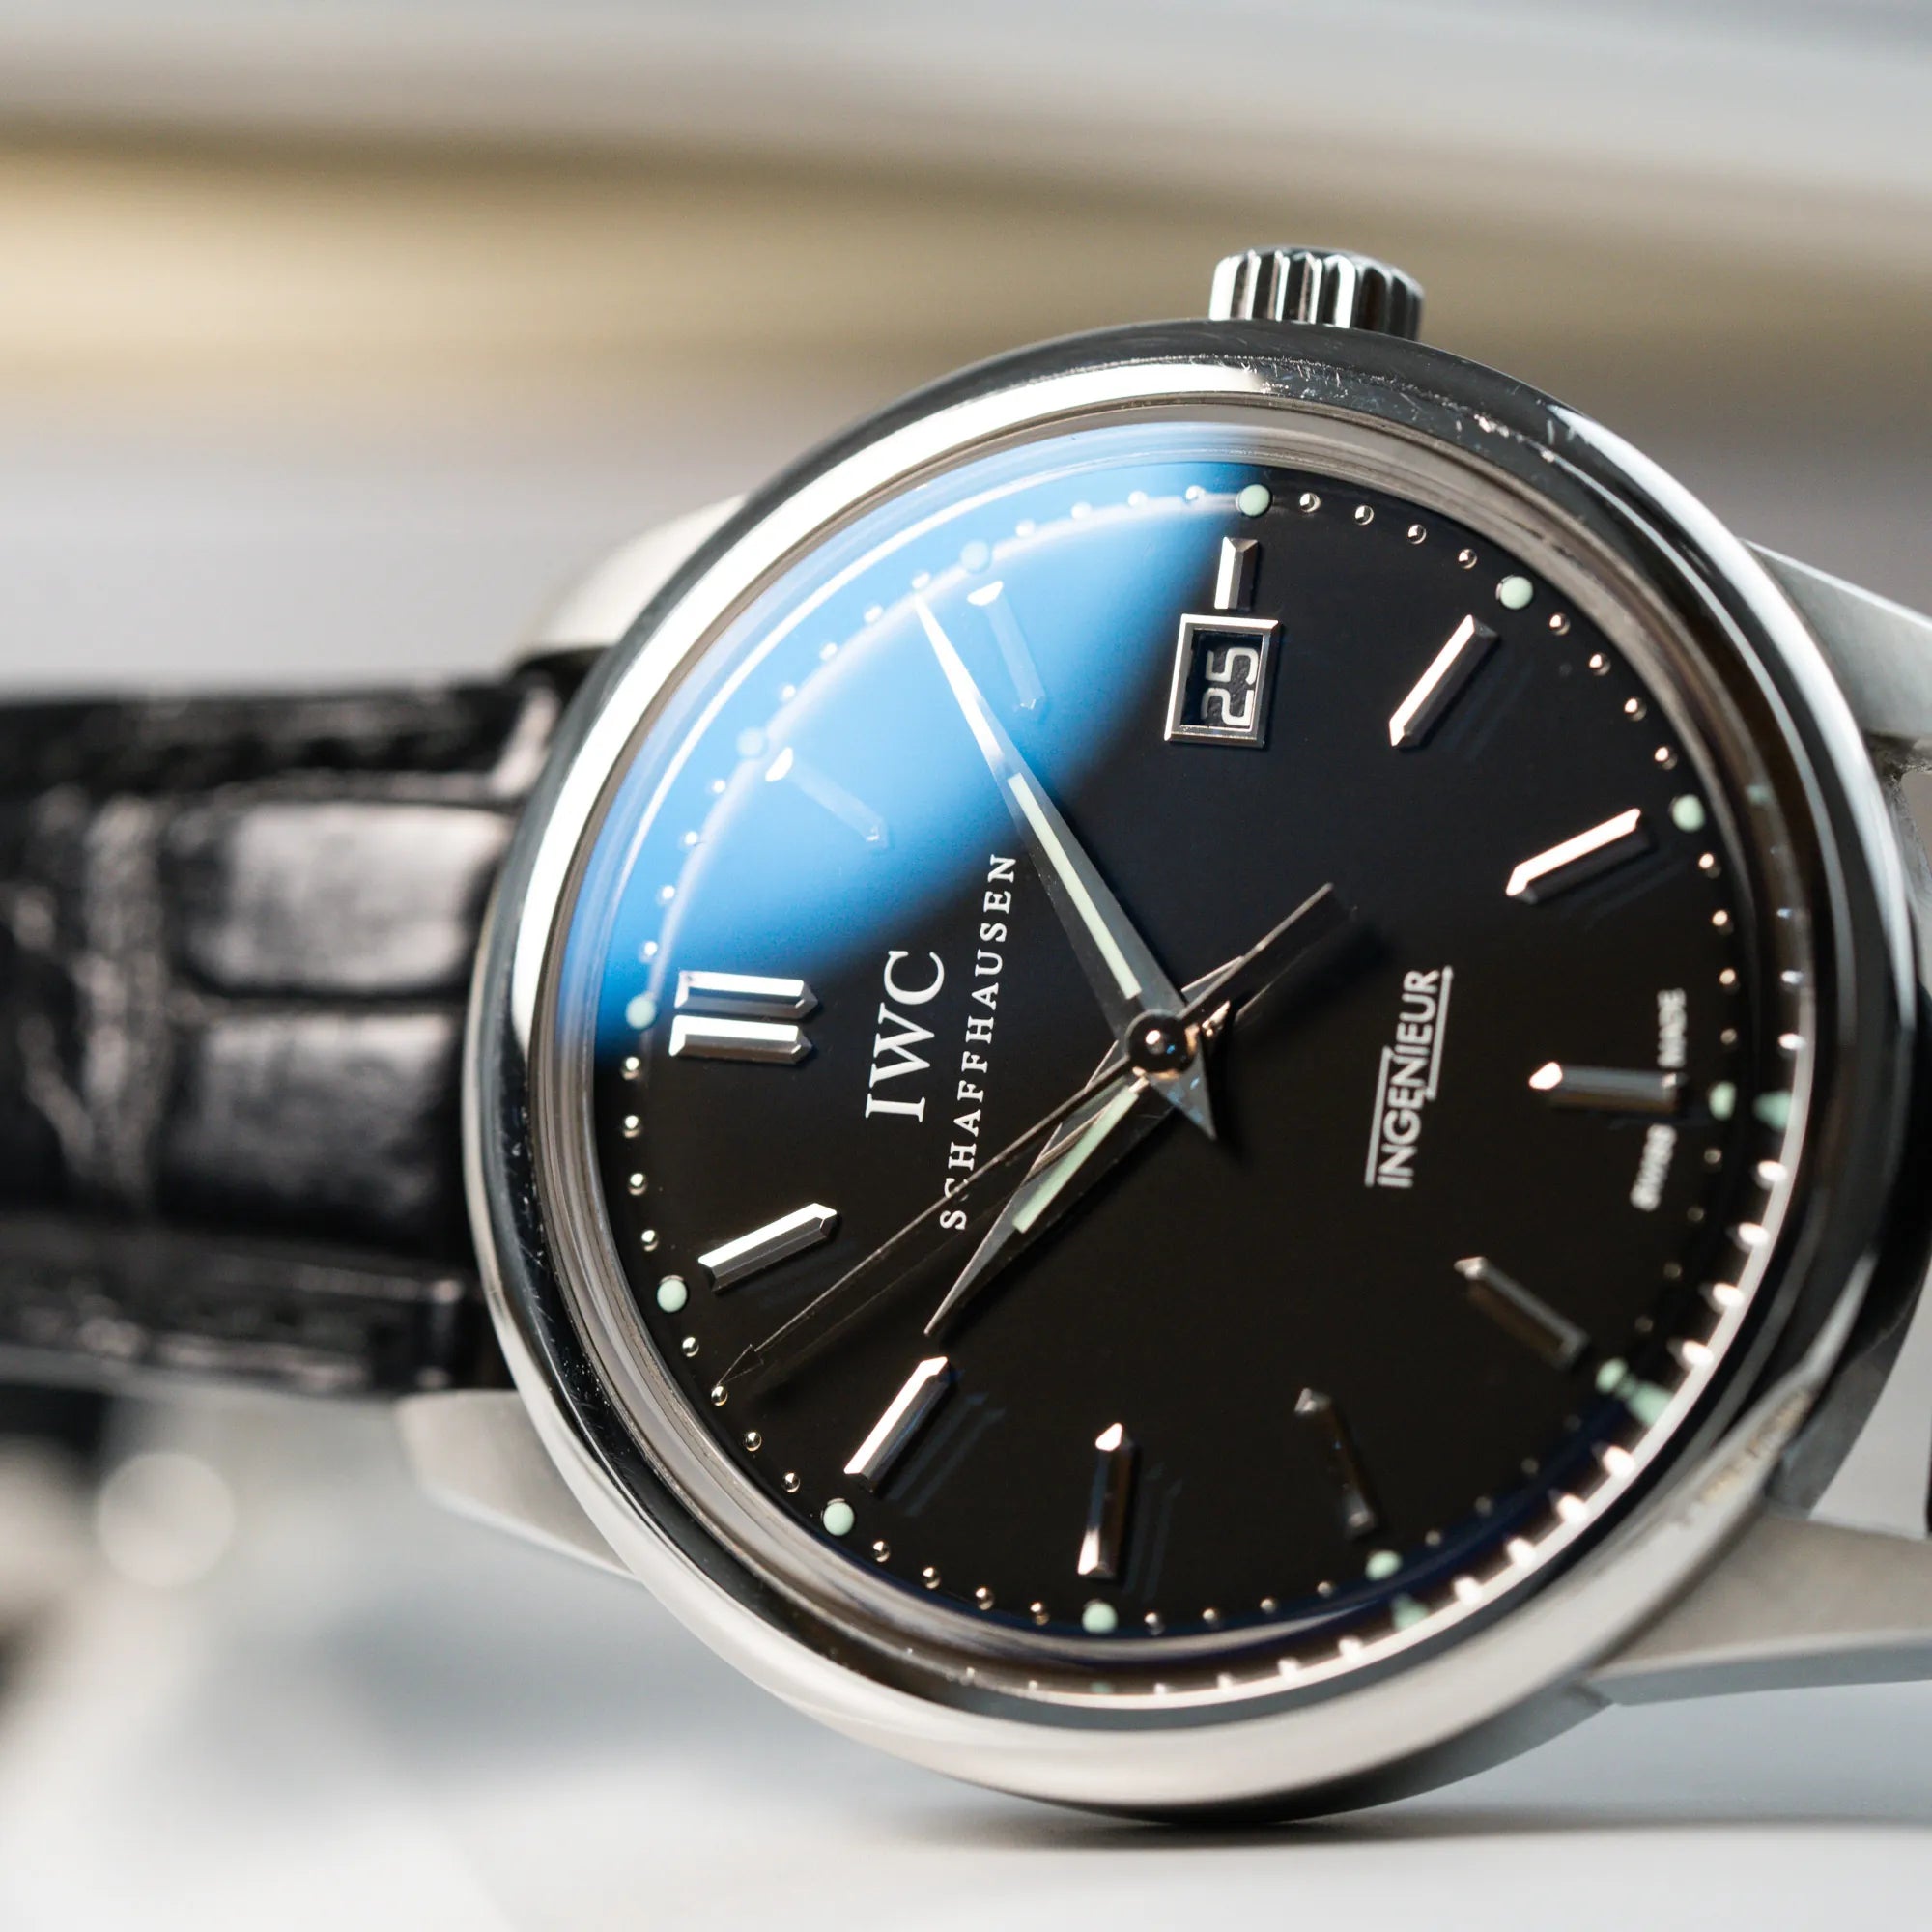 Detailaufnahme der IWC Schaffhausen Uhr "Ingenieur" mit der Referenz IW323301 mit schwarzem Zifferblatt